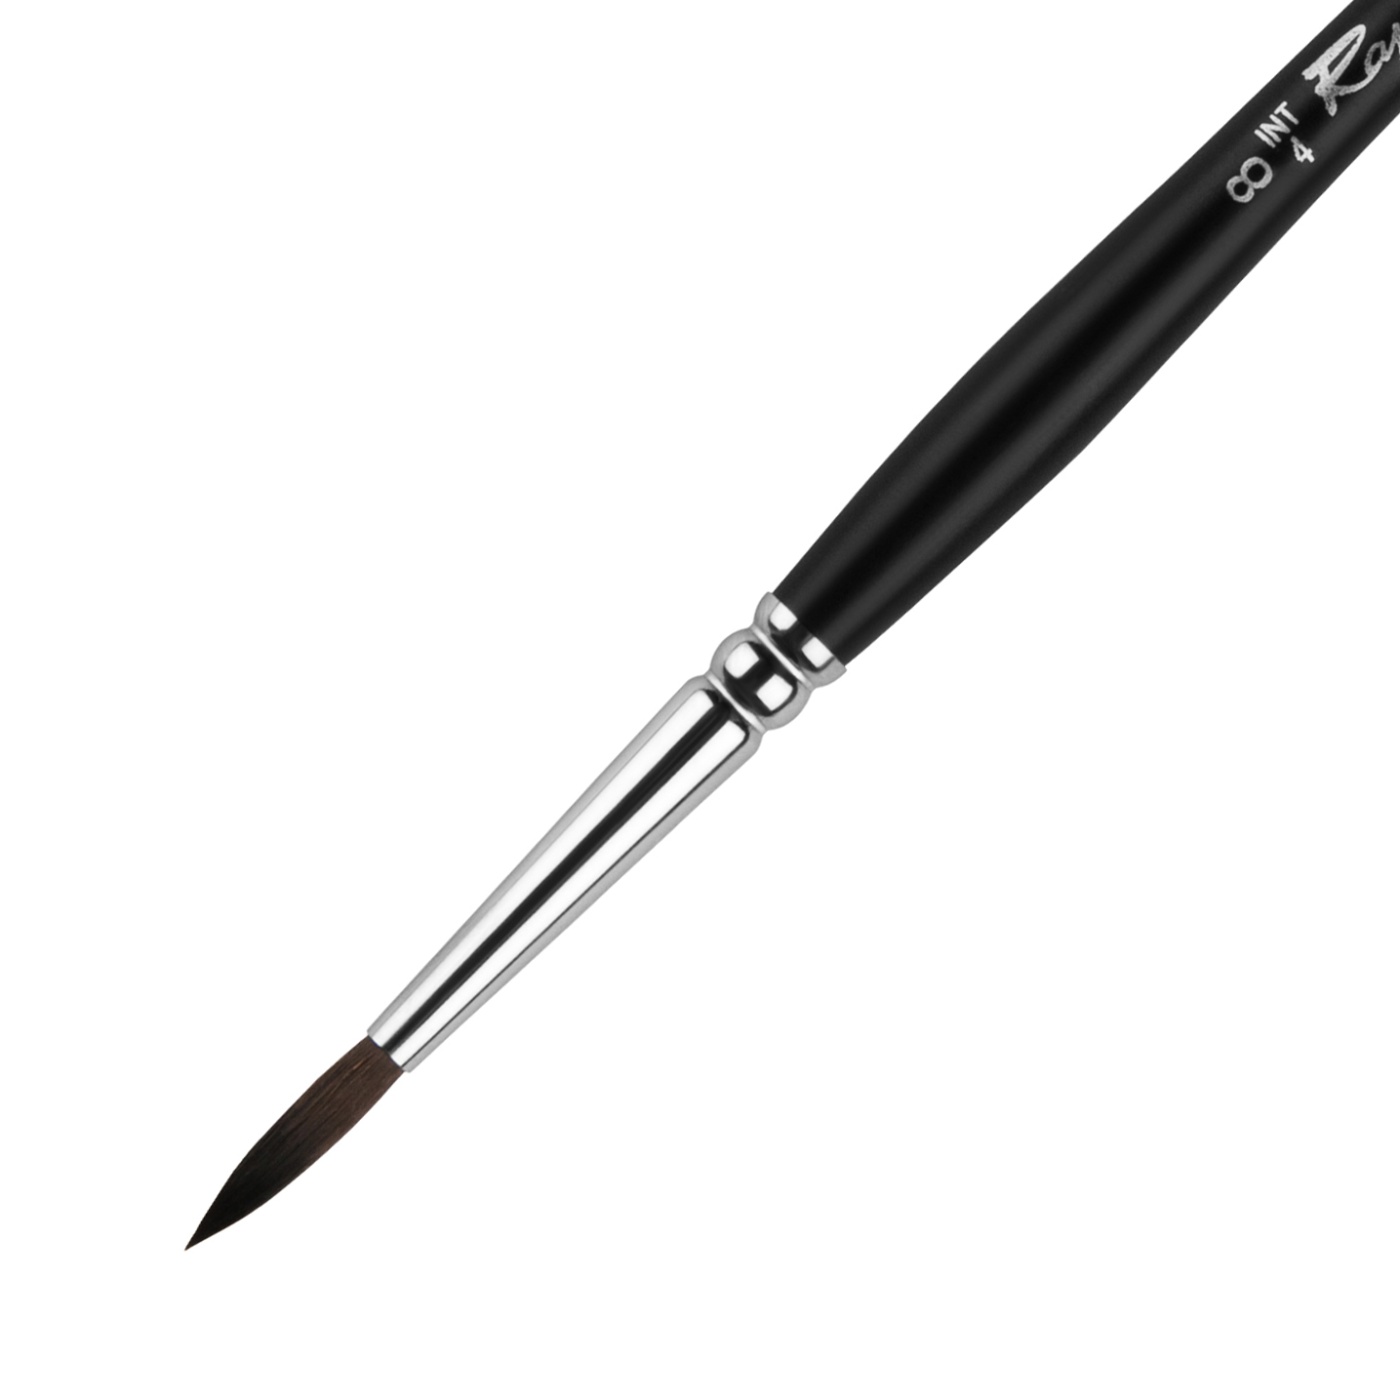 Sytntetic Brush SoftAqua 8 i gruppen Kunstnerartikler / Pensler / Syntetiske pensler hos Pen Store (106265)